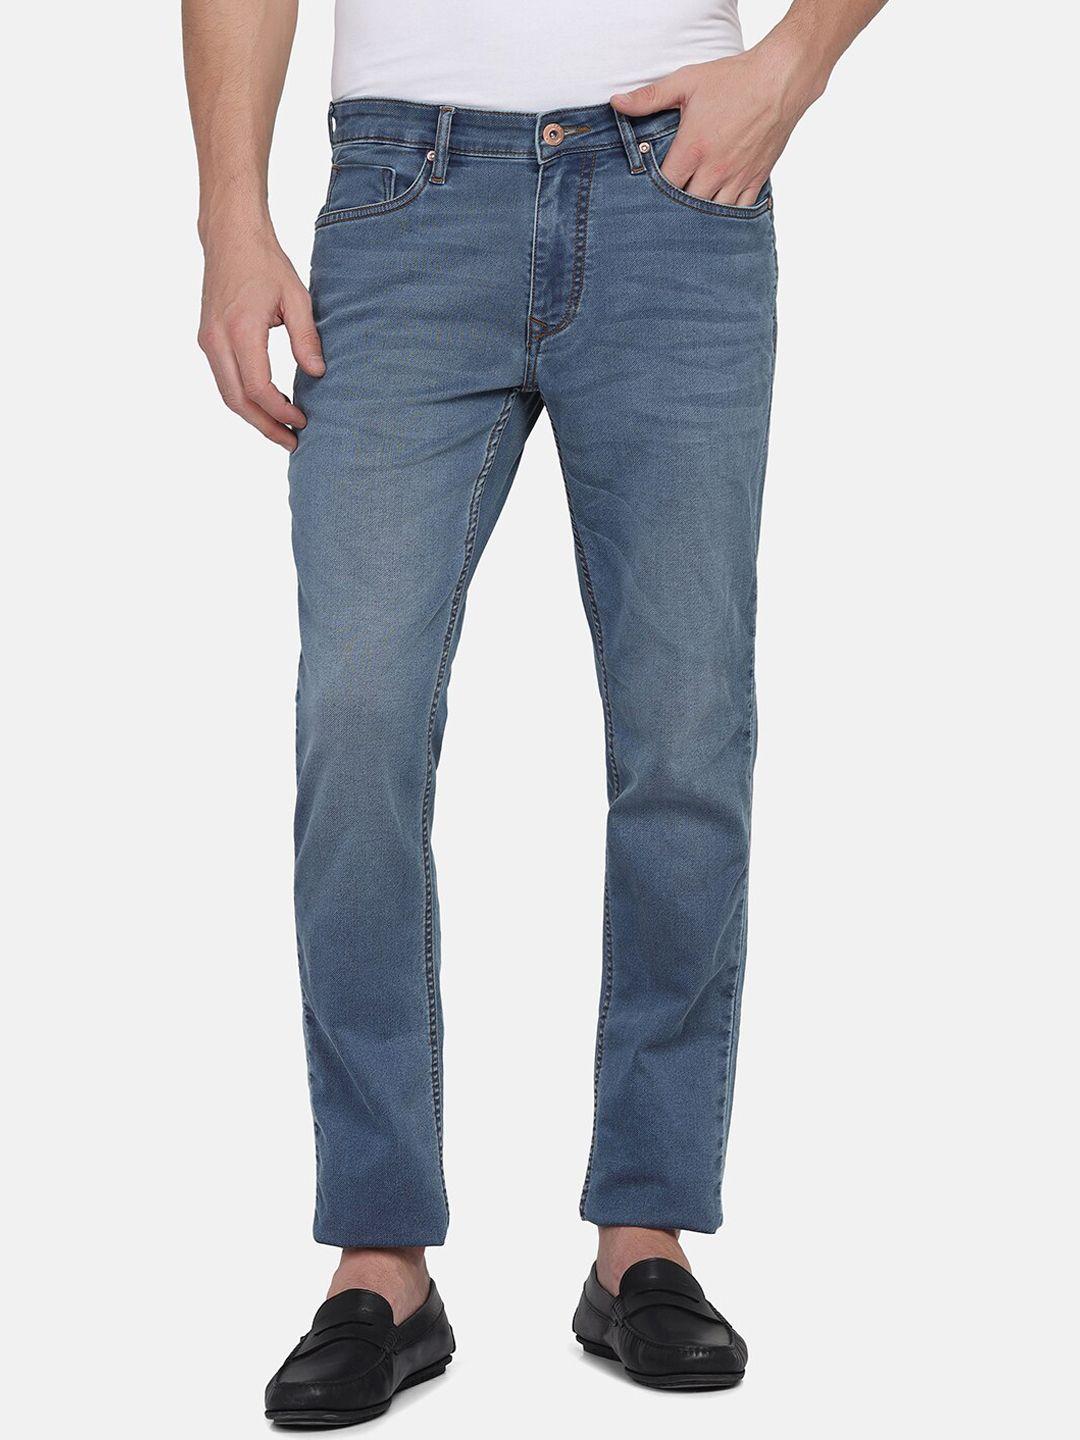 blackberrys-men-slim-fit-low-rise-light-fade-jeans